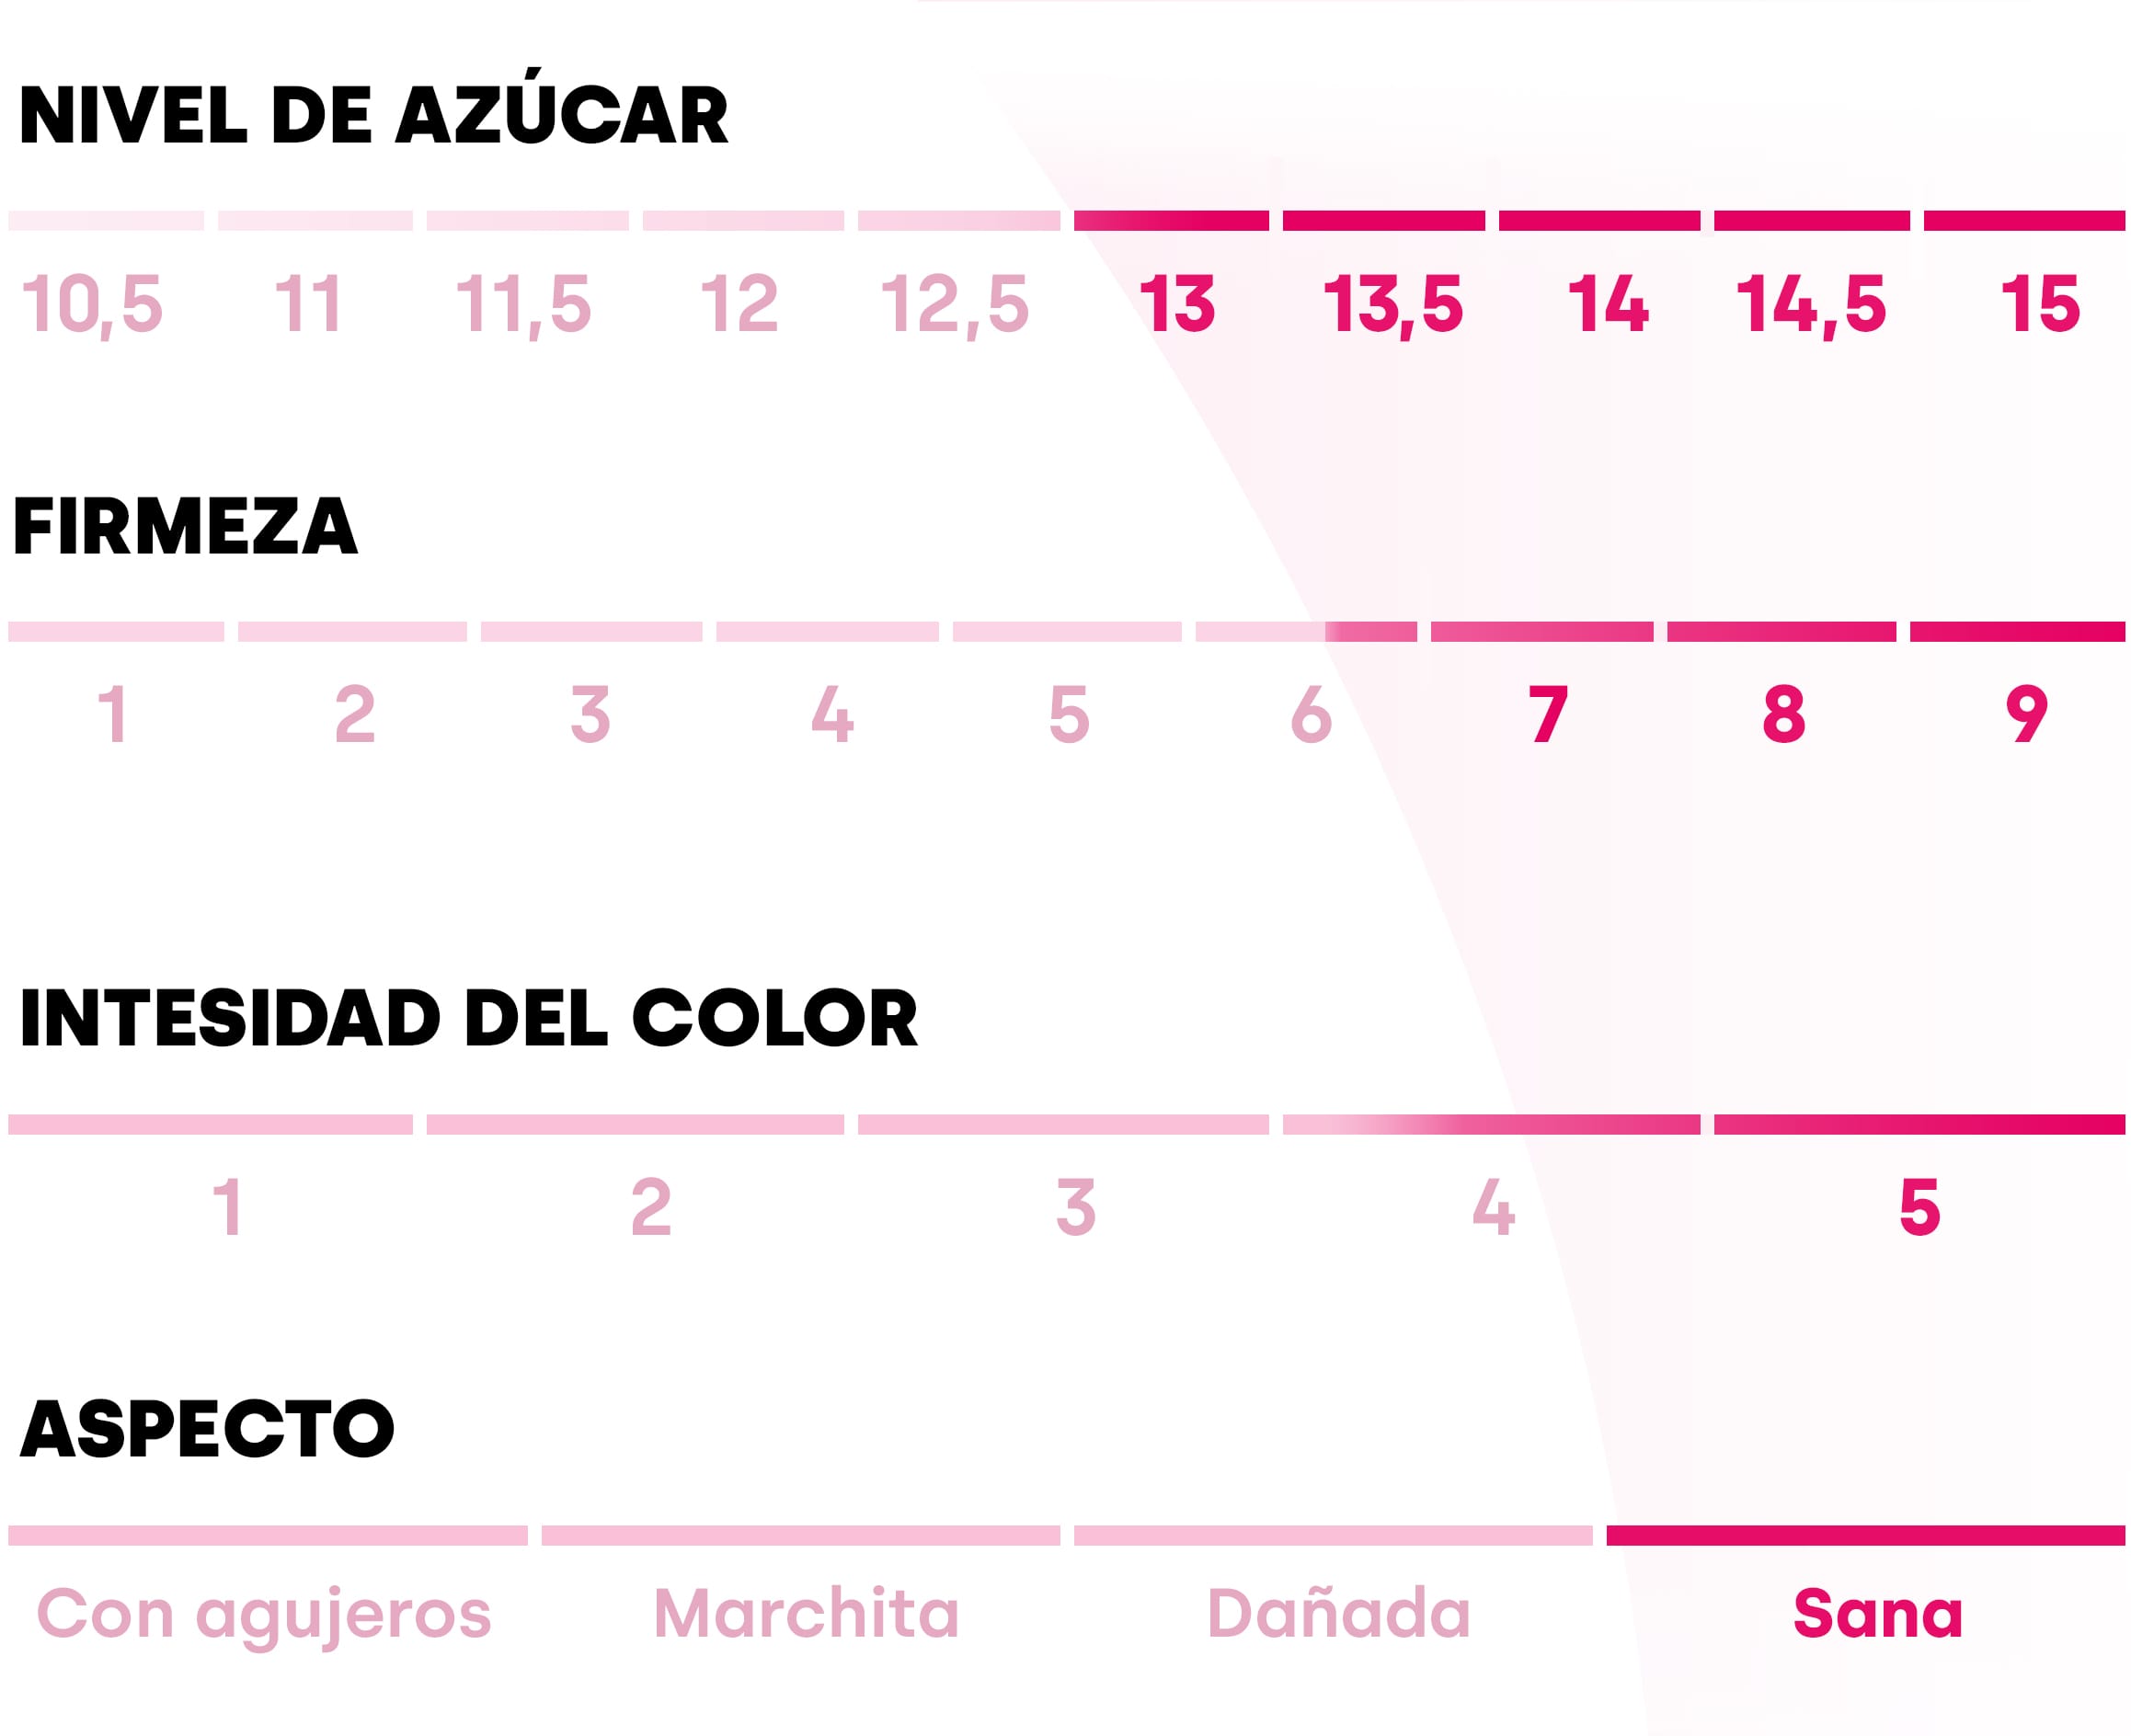 Tabla que describe los diferentes valores de la manzana Pink Lady®. Contenido en azúcares: 13/15; firmeza: 6,5/9; intensidad del color: 4,5/5 y aspecto: sana.